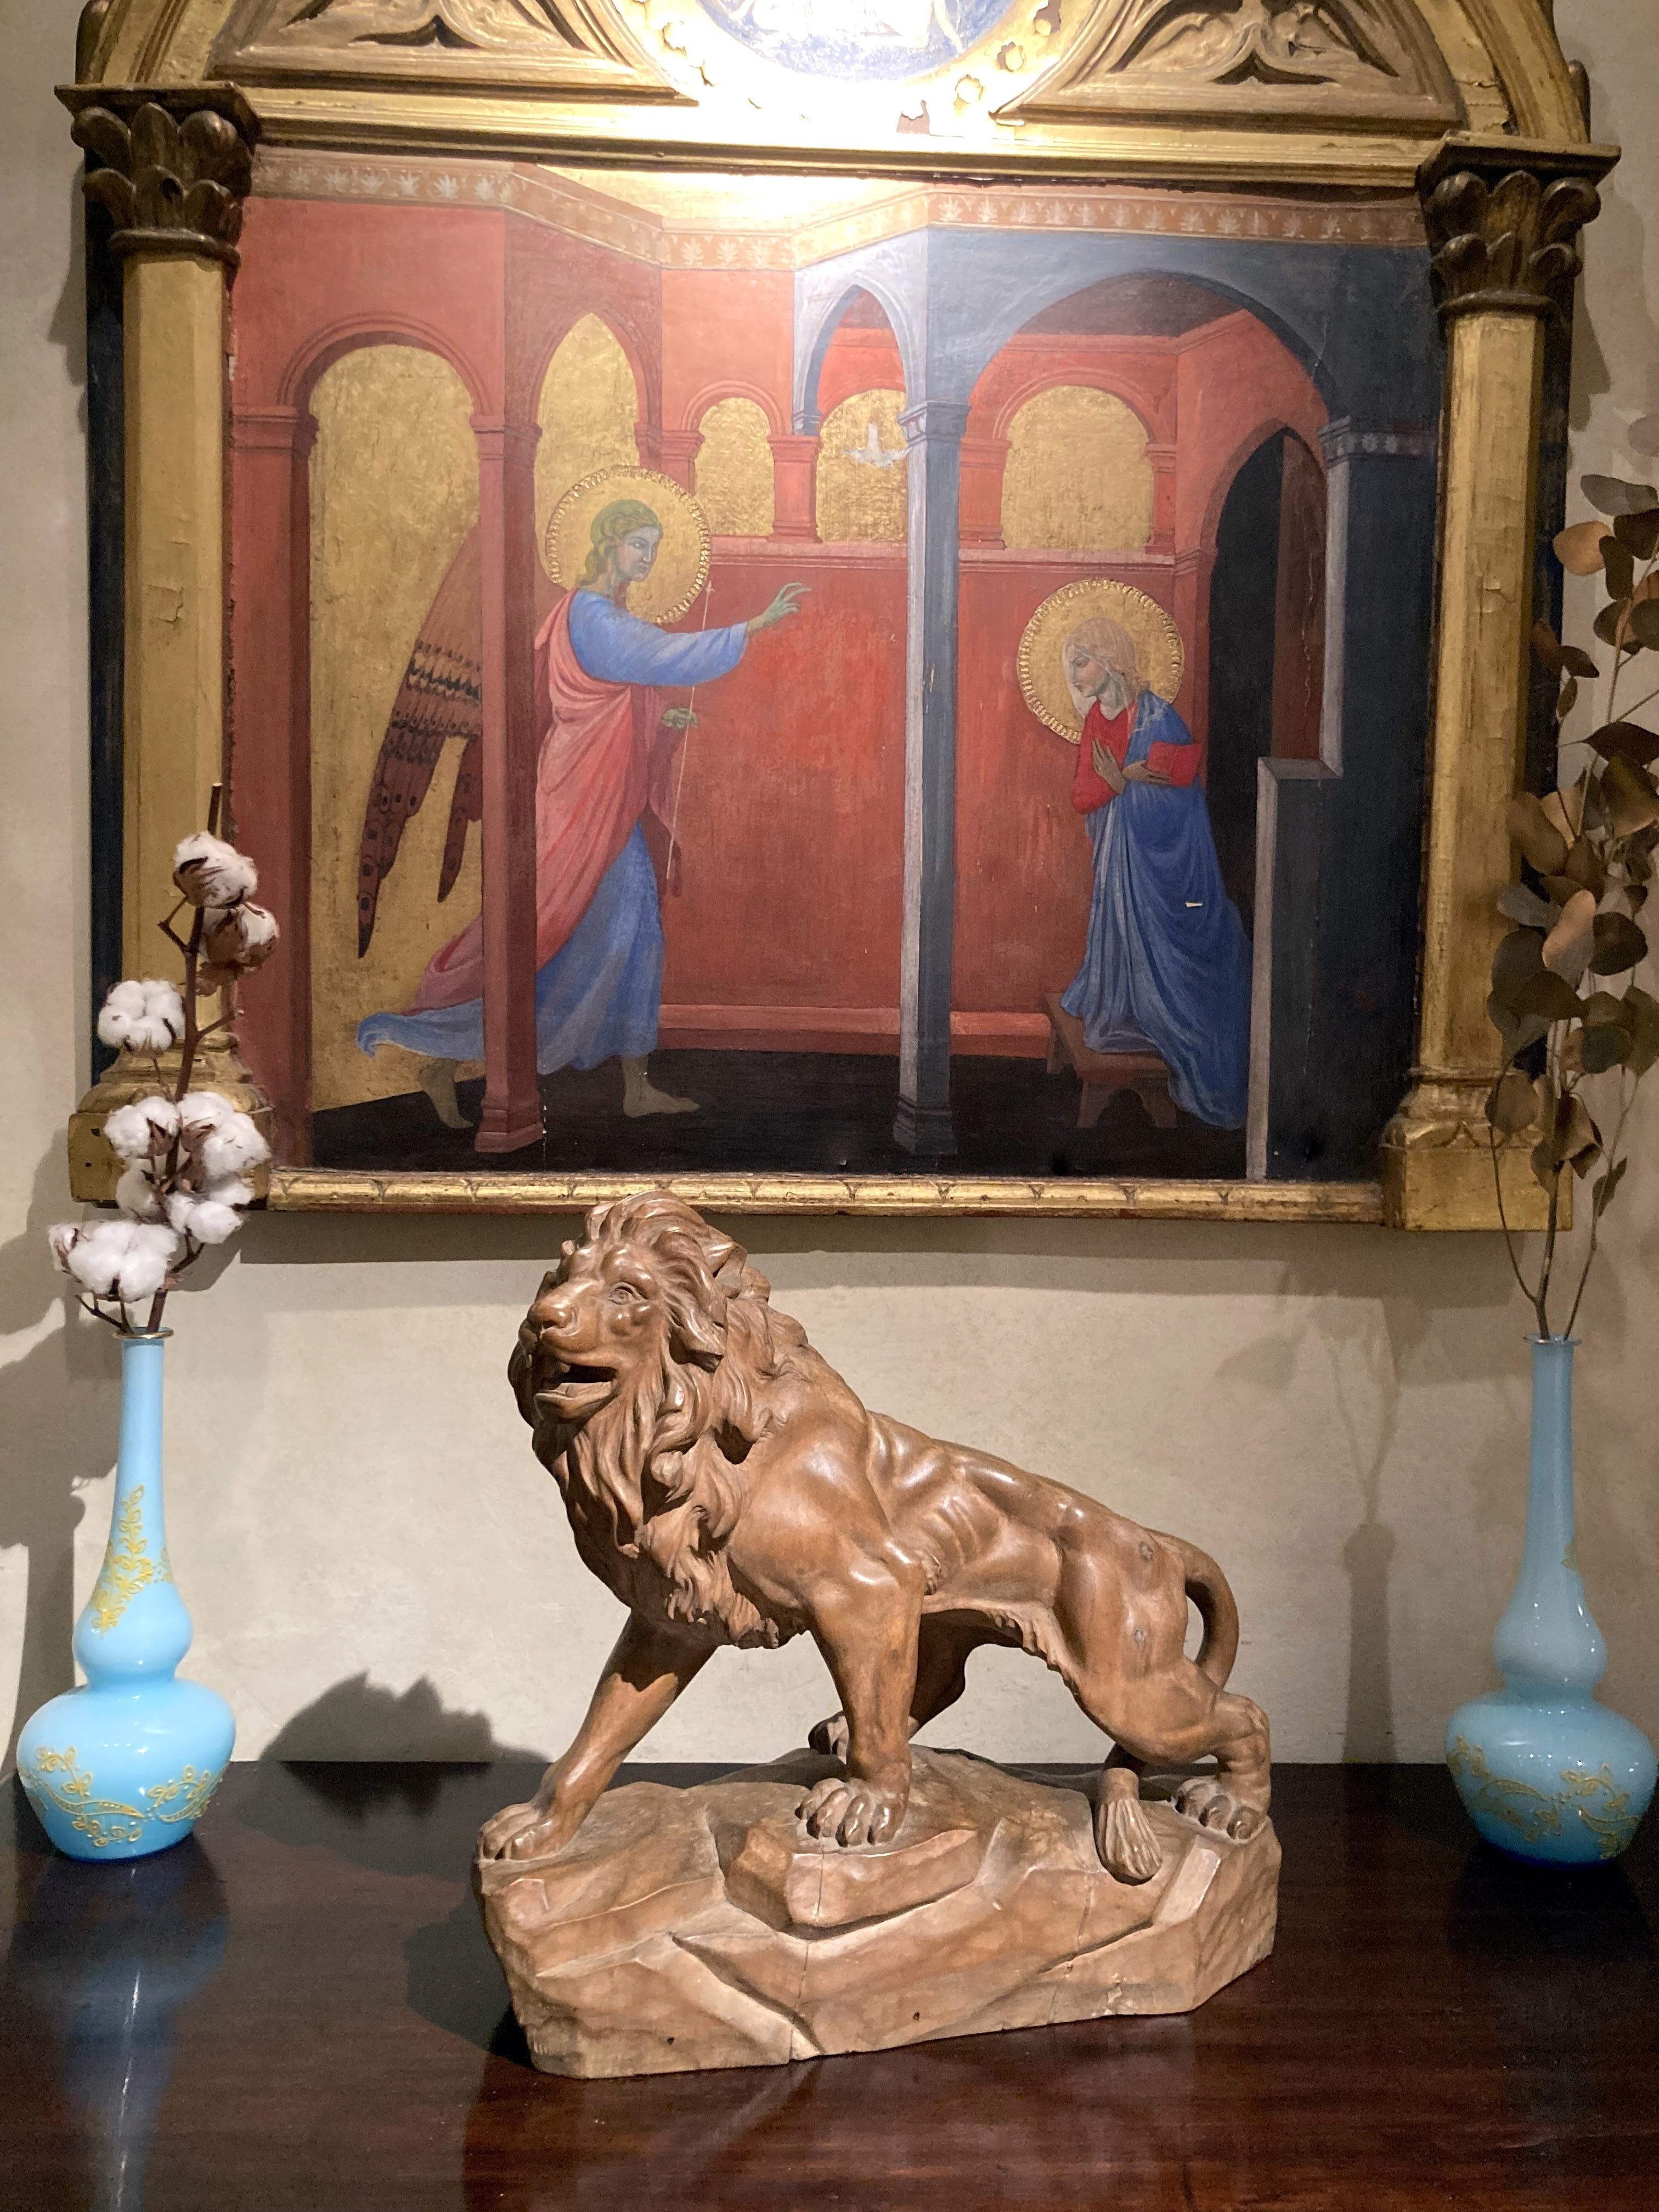 Diese große italienische Tierskulptur aus dem 19. Jahrhundert zeigt einen Löwen, der auf einem Sockel aus Wurzelholz vorwärts schreitet und mit offenem Maul und ausdrucksstarken Augen knurrt, die seine wogende Mähne mit einem äußerst realistischen